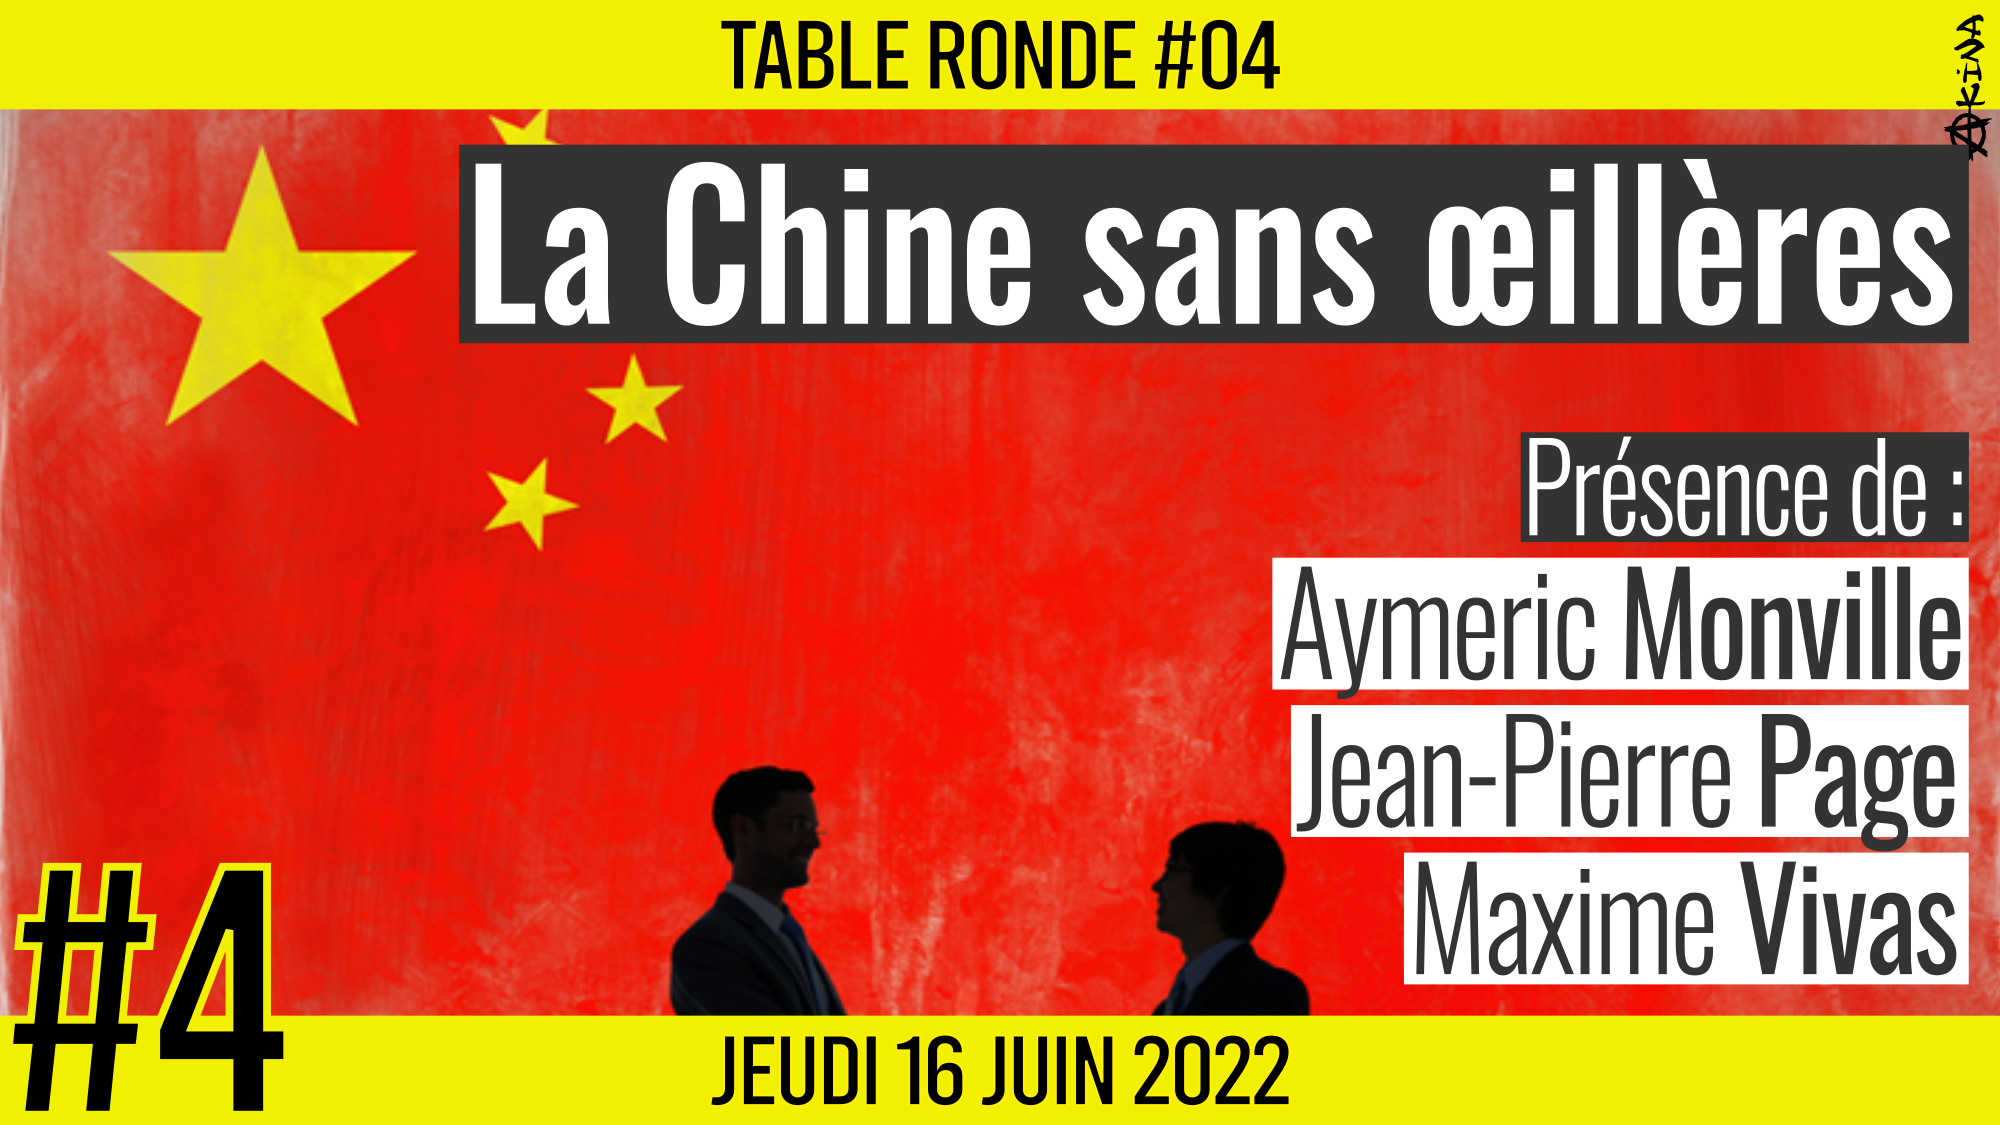 🎡 TABLE RONDE #04 👥 Aymeric Monville, Jean-Pierre Page et Maxime Vivas 🎯 La Chine sans œillères 📆 16-06-2022